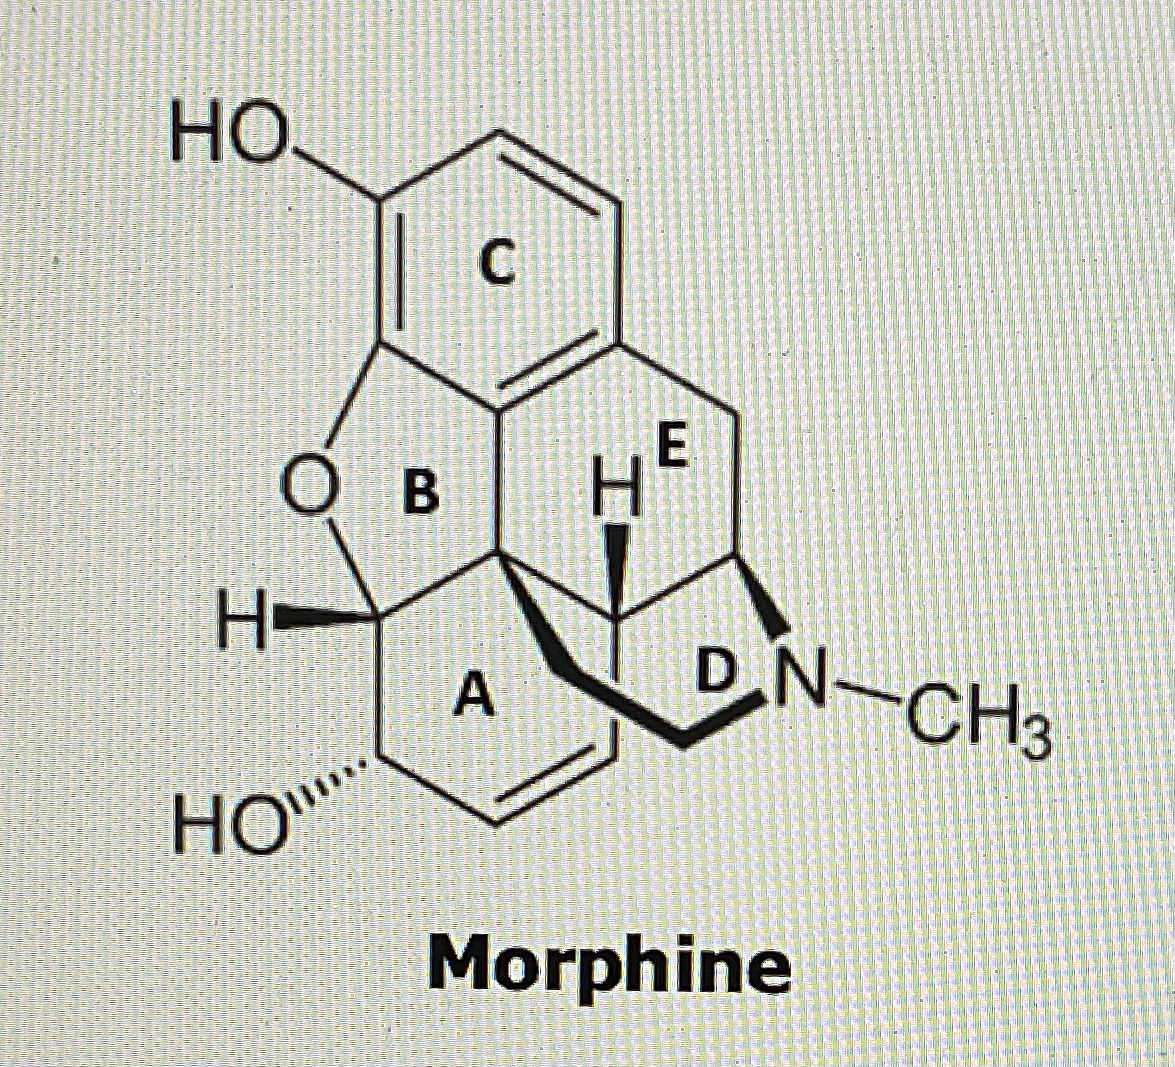 HO.
Ов H
CH
C
HO
A
E
DN-CH3
Morphine